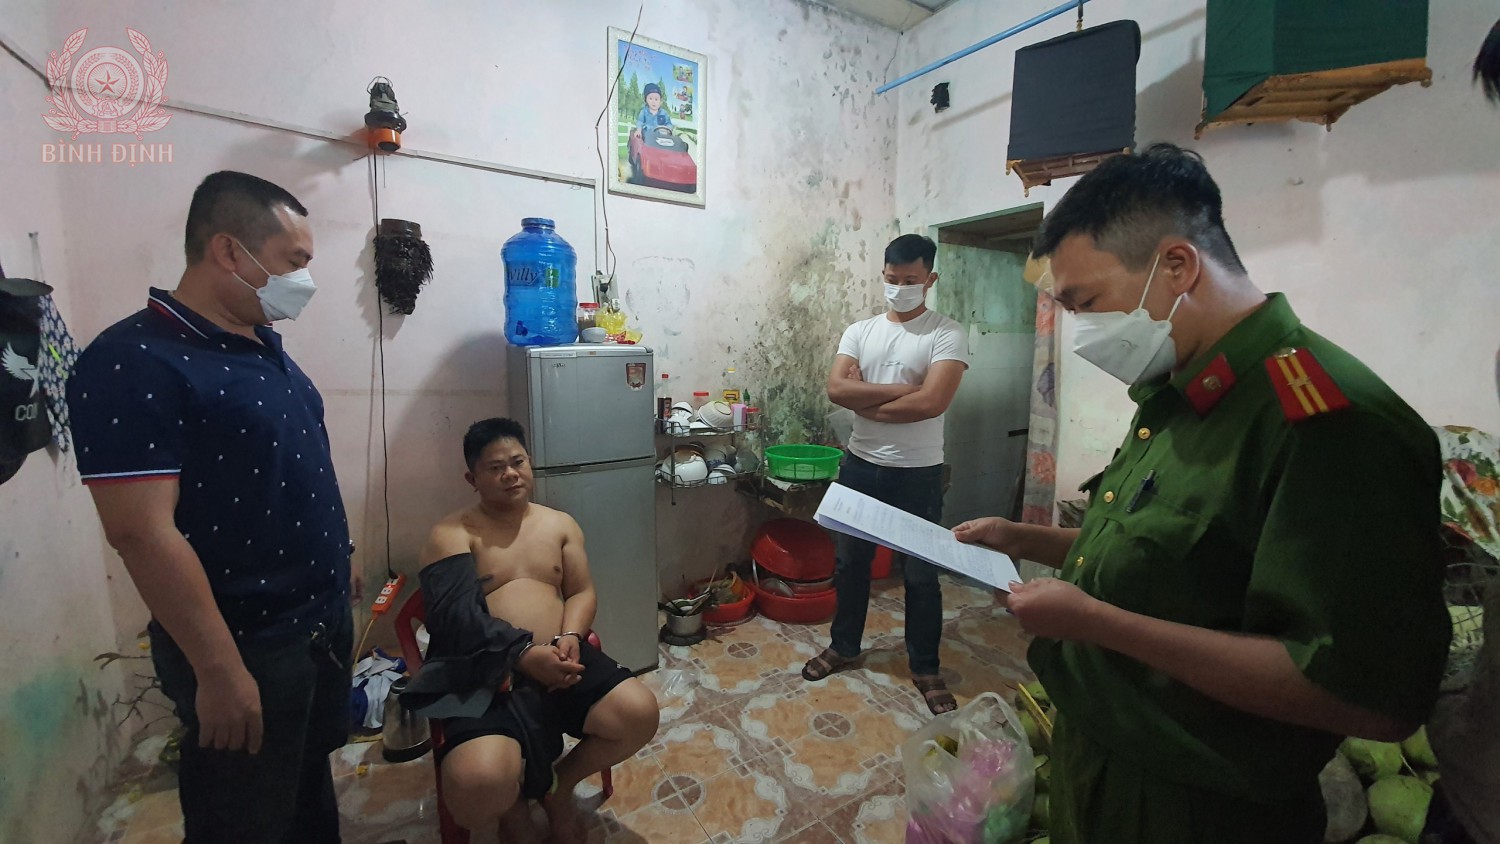 Cơ quan Công an bắt đối tượng Nguyễn Thanh Toàn (ngồi) trong đường dây ma túy.